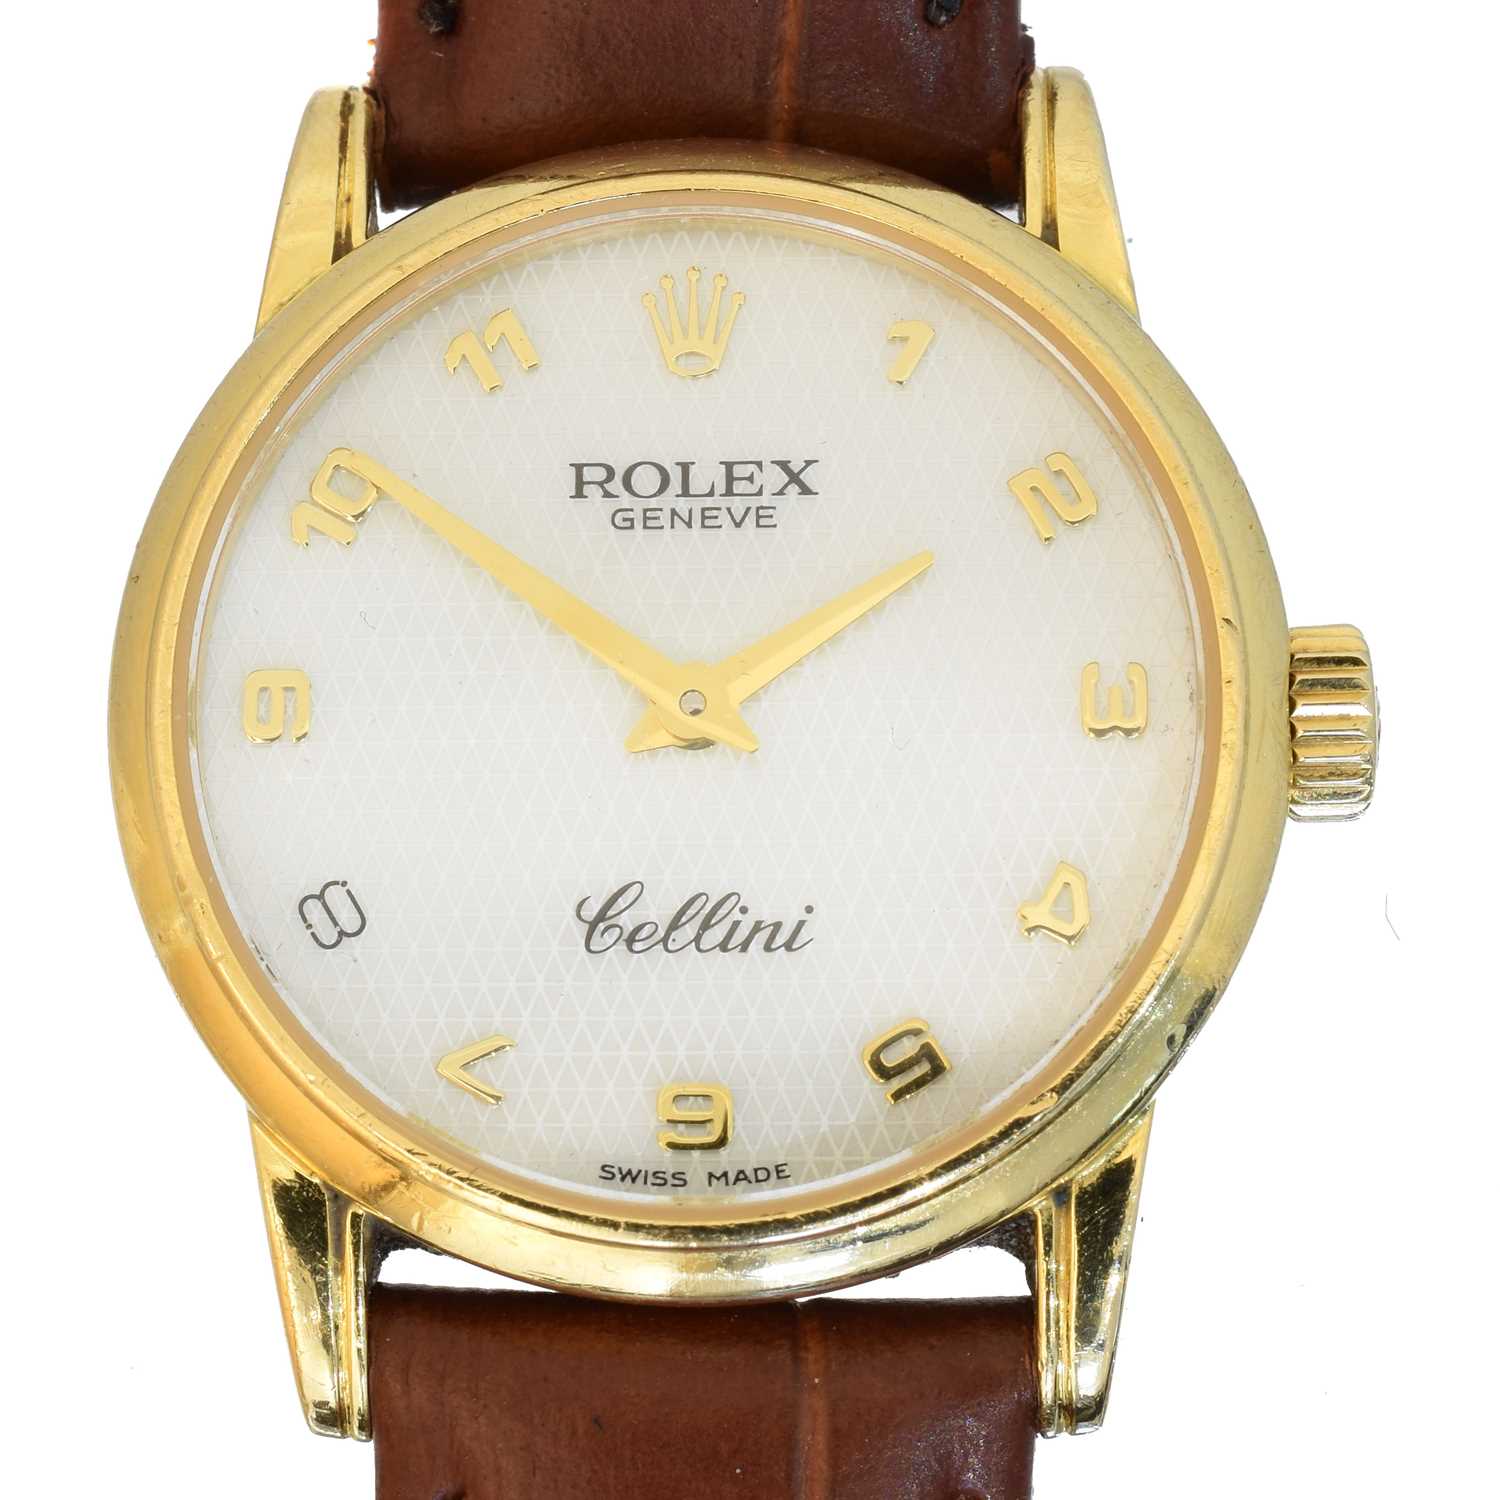 Lot A ladies 18ct gold Rolex Cellini wristwatch